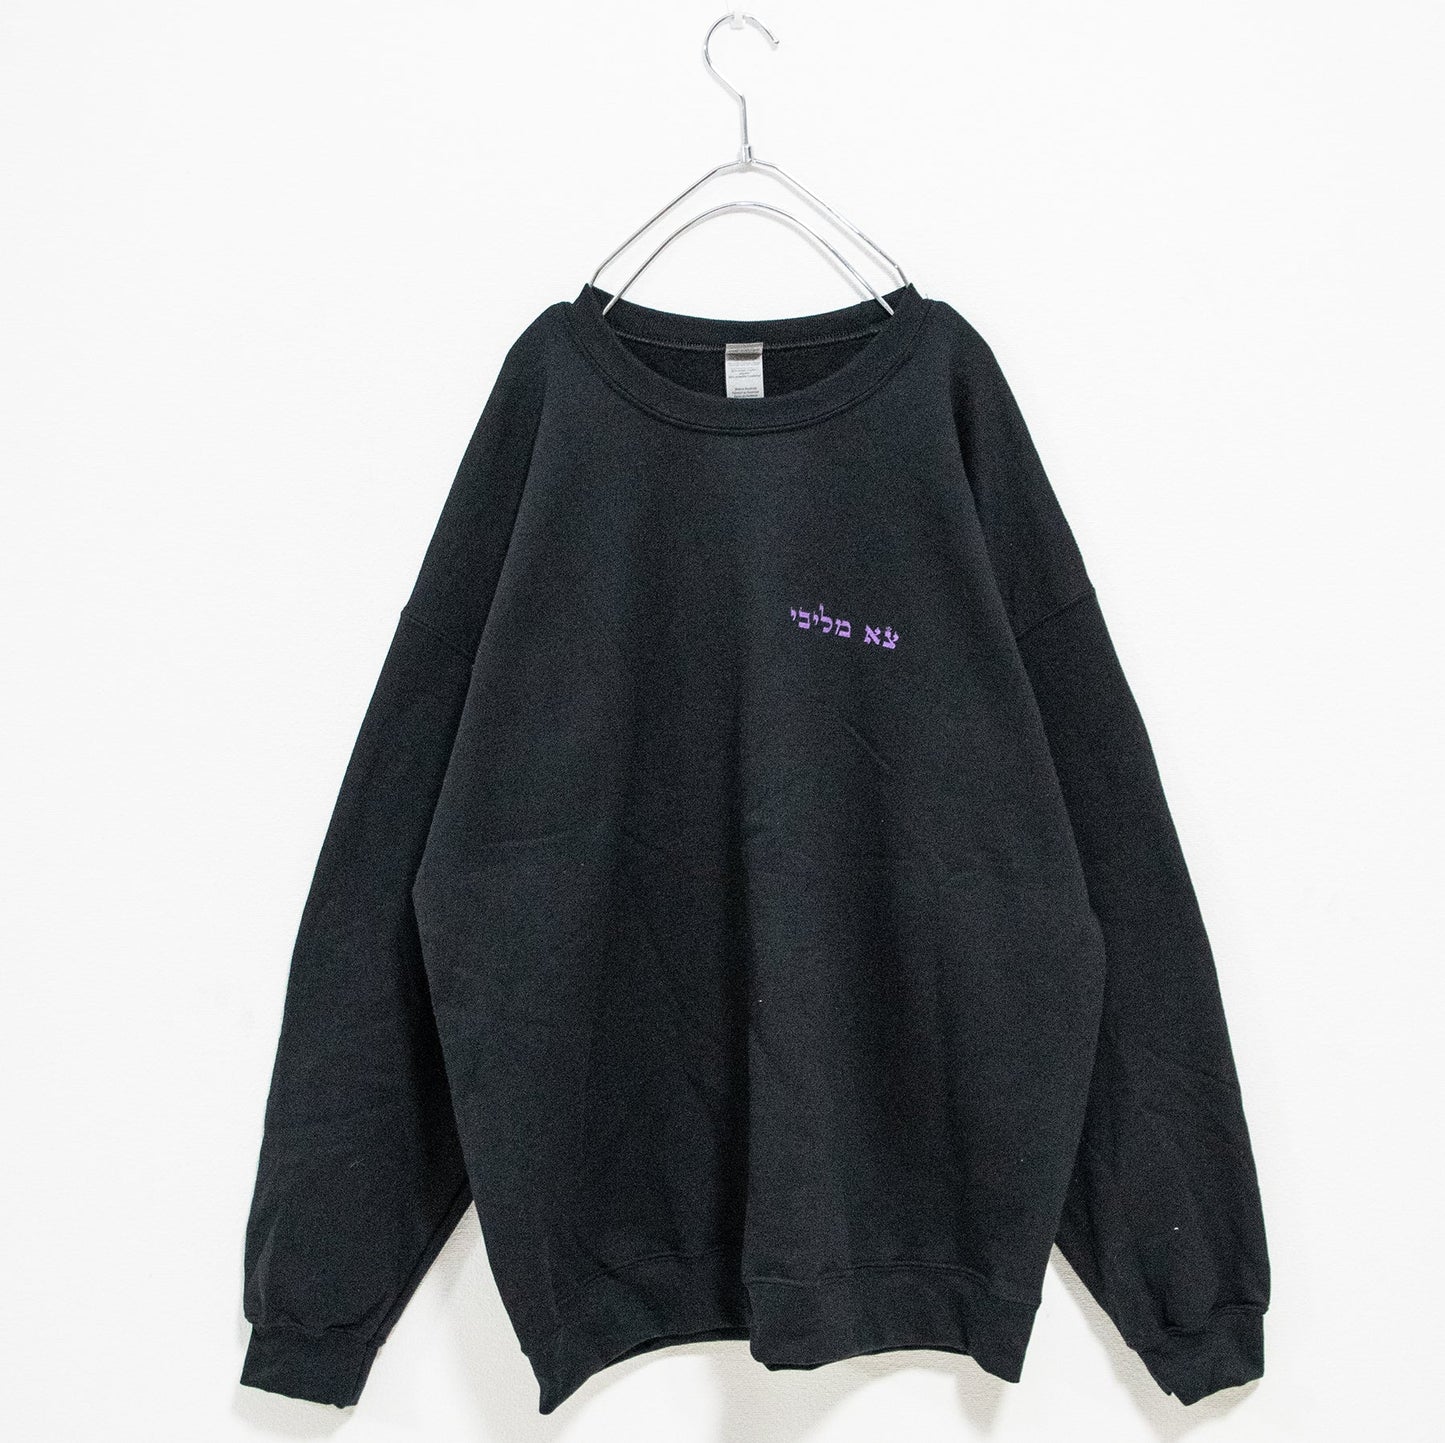 TRACY x NOIKISU Garter Girl Sweatshirt BLACK